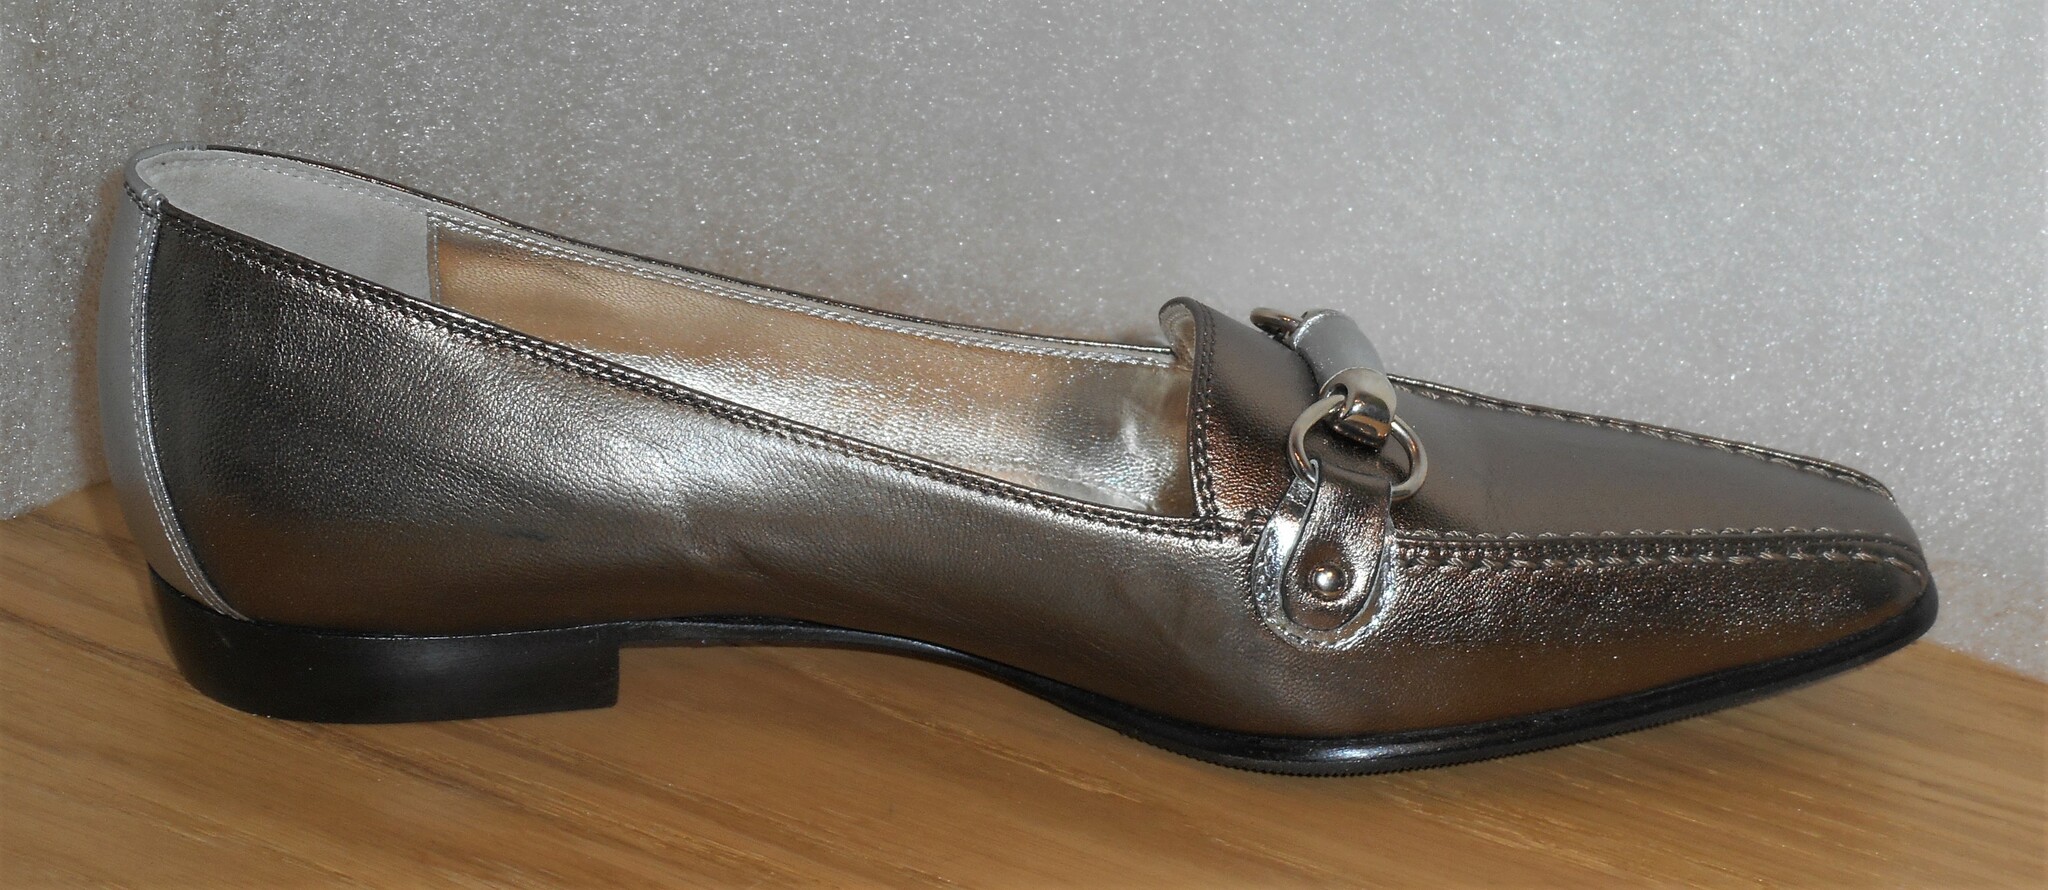 Metallicfärgad loafer från italienska Mara Bini